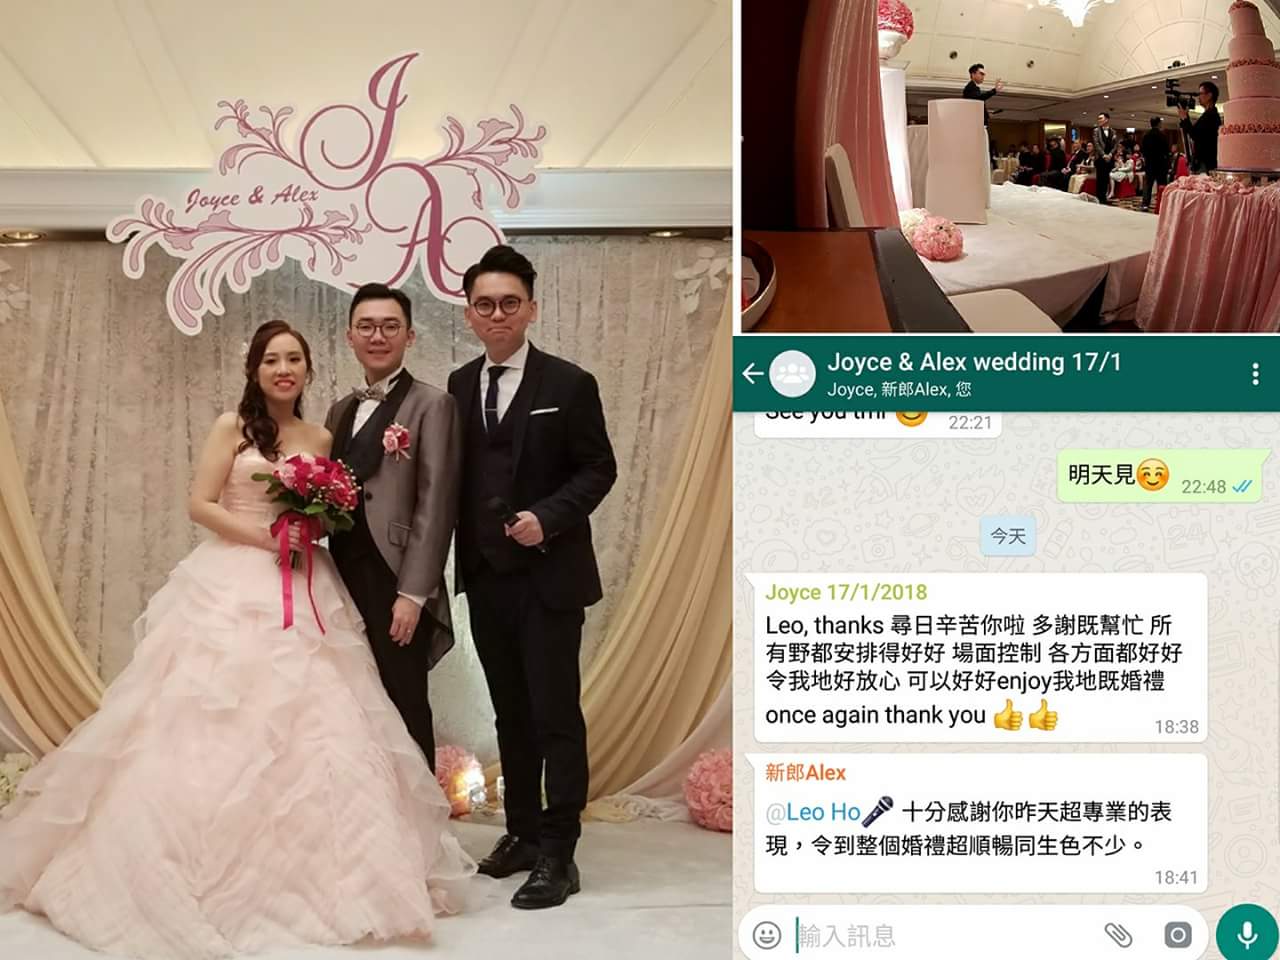 婚禮司儀 Mc Leo ho司儀工作紀錄: 婚禮司儀 Wedding MC Outjob (MC Leo) (17, Jan 2018 @#海景嘉福酒店